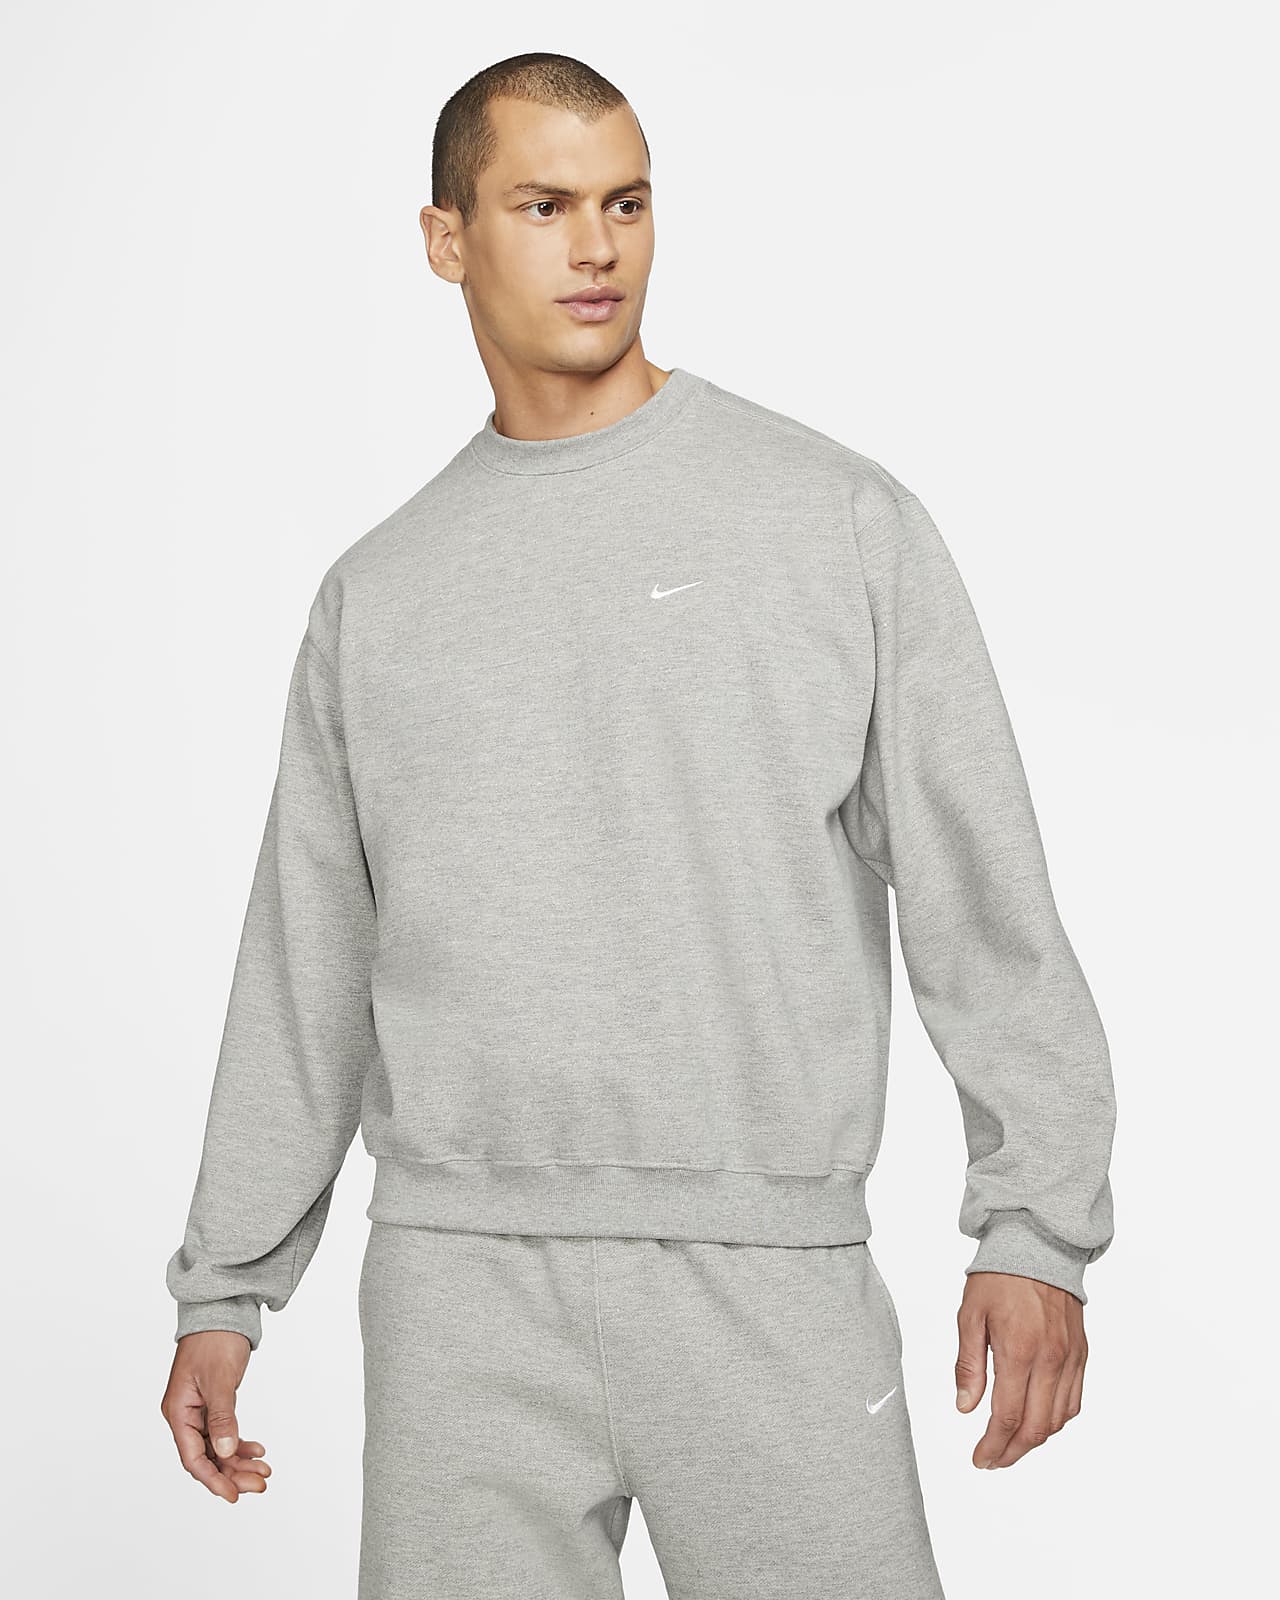 gaan beslissen Verkoper krijgen Nike "Made In the USA" Men's Crew Sweatshirt. Nike.com